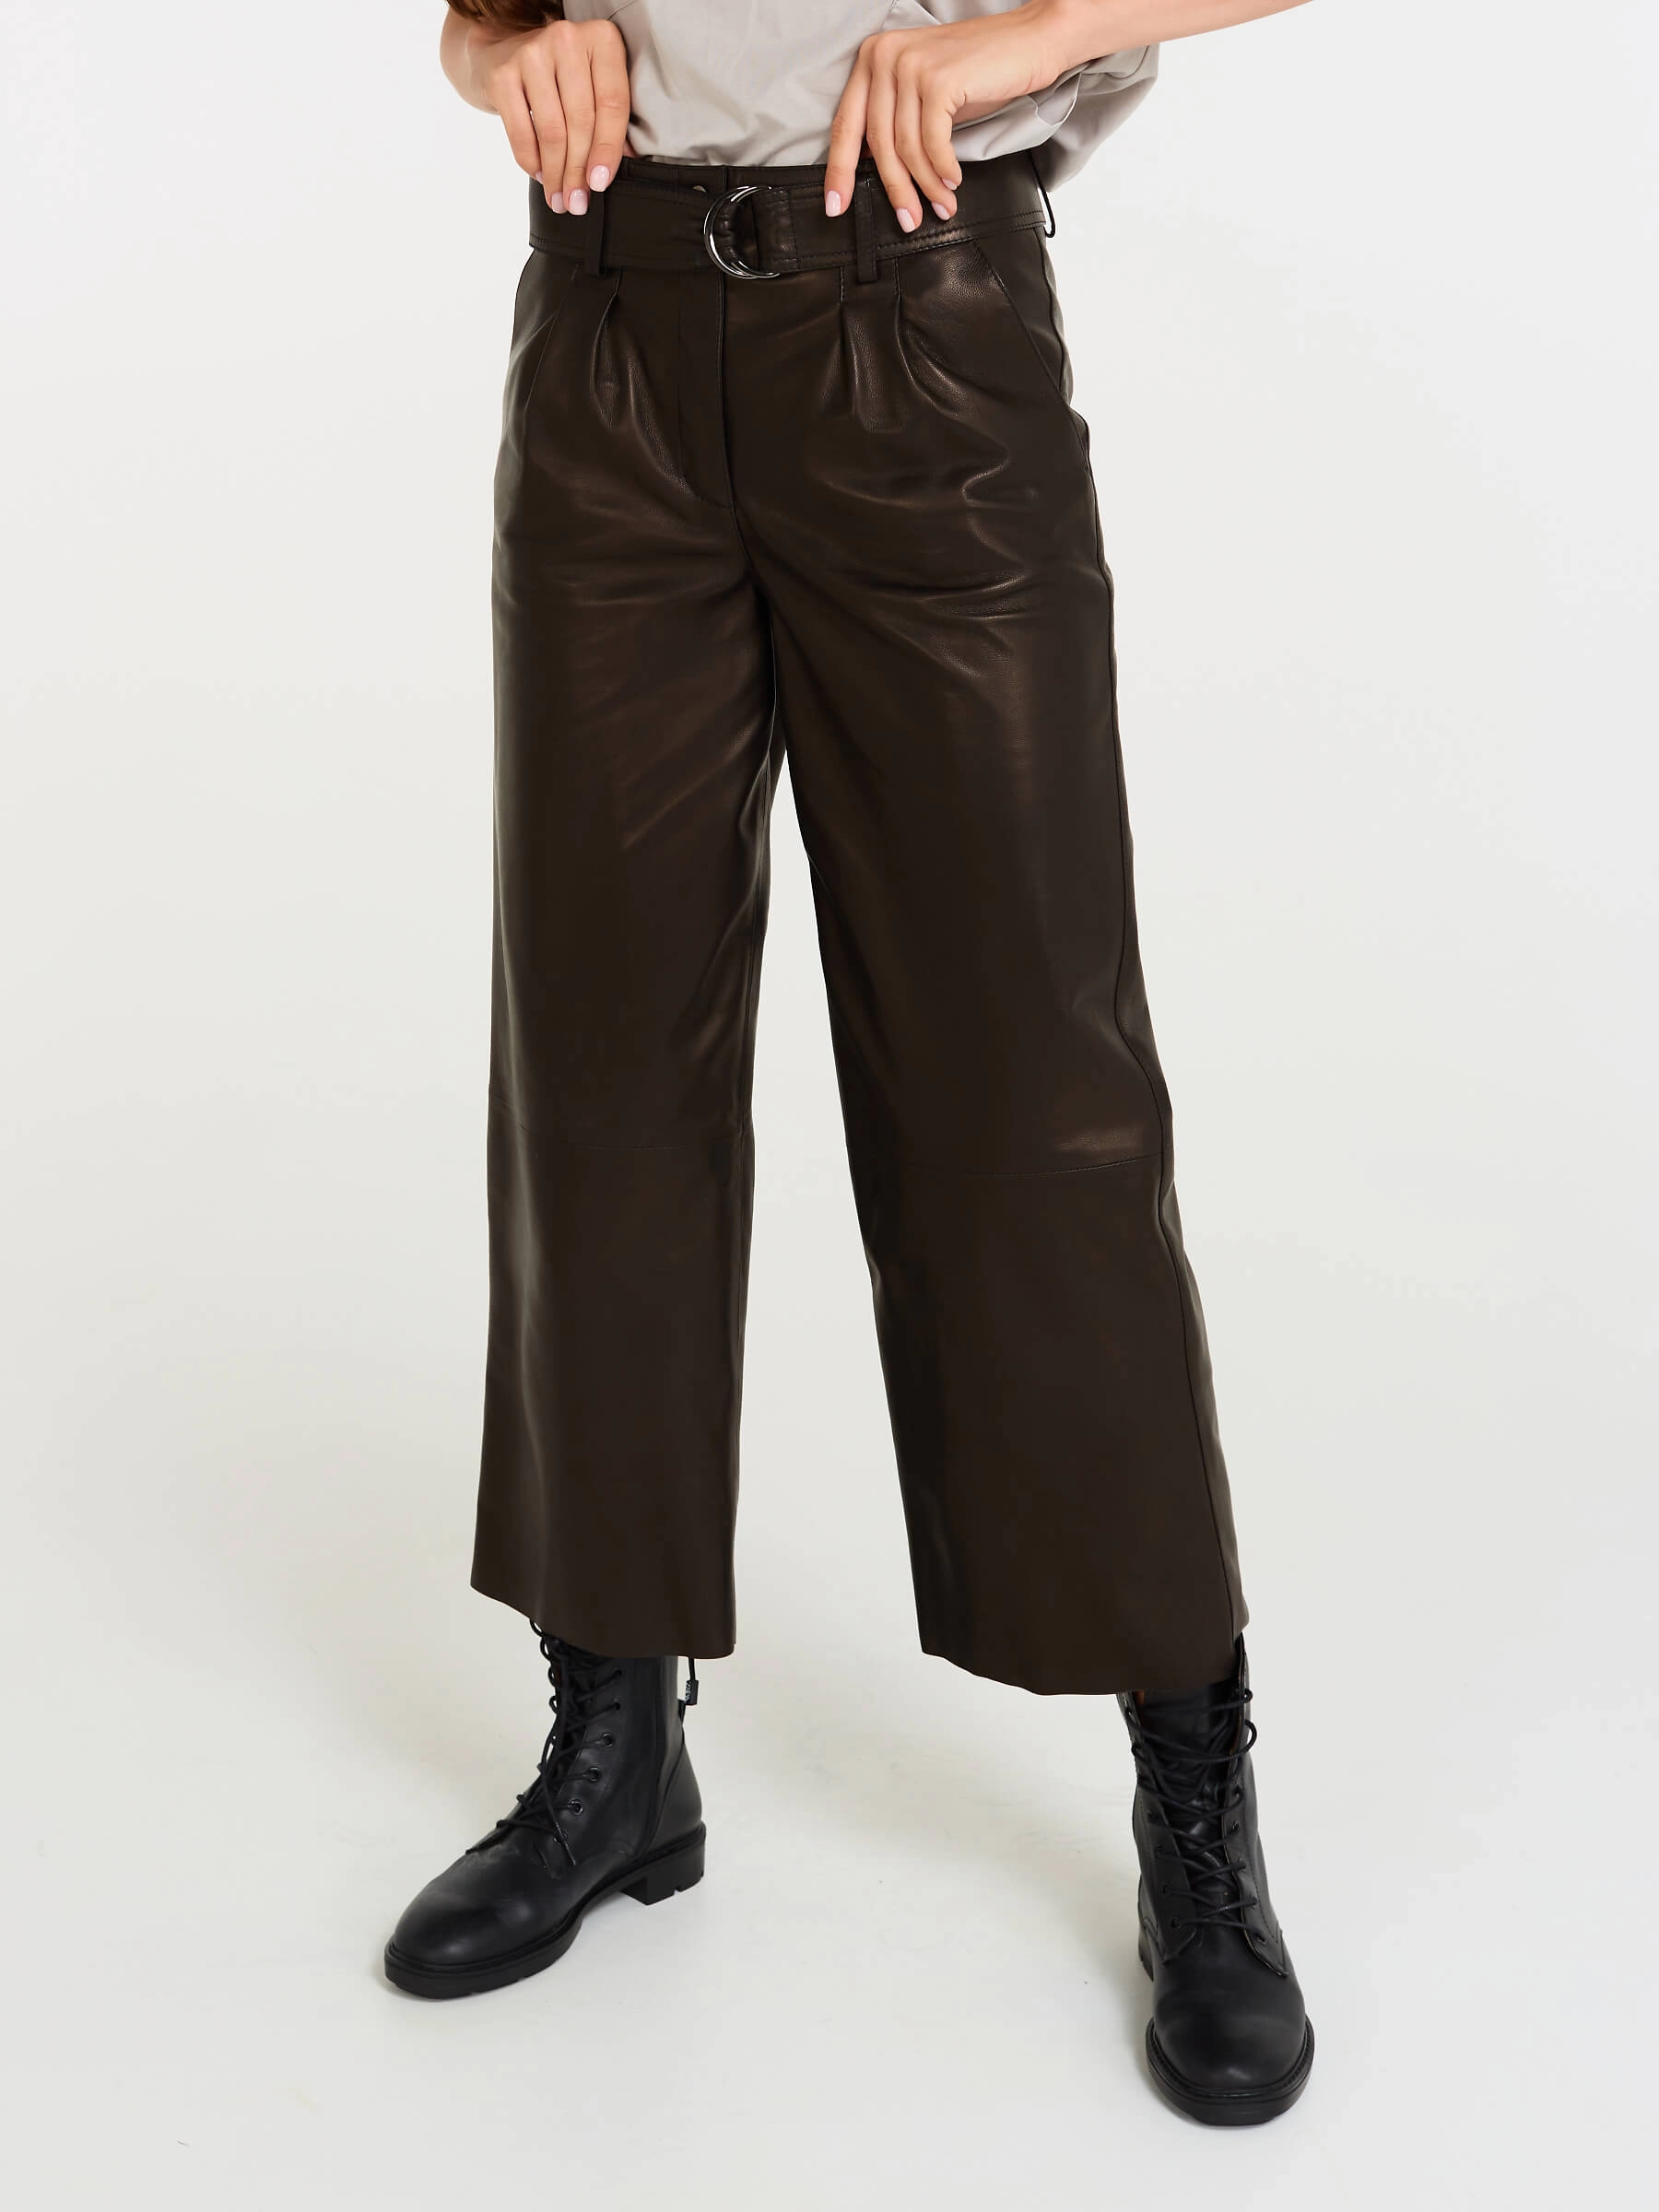 Купить кожаные укороченные брюки женские 05, из натуральной кожи, черные, размер50, артикул 85090 по цене 33 990 руб. в Москве в магазине Primo Vello